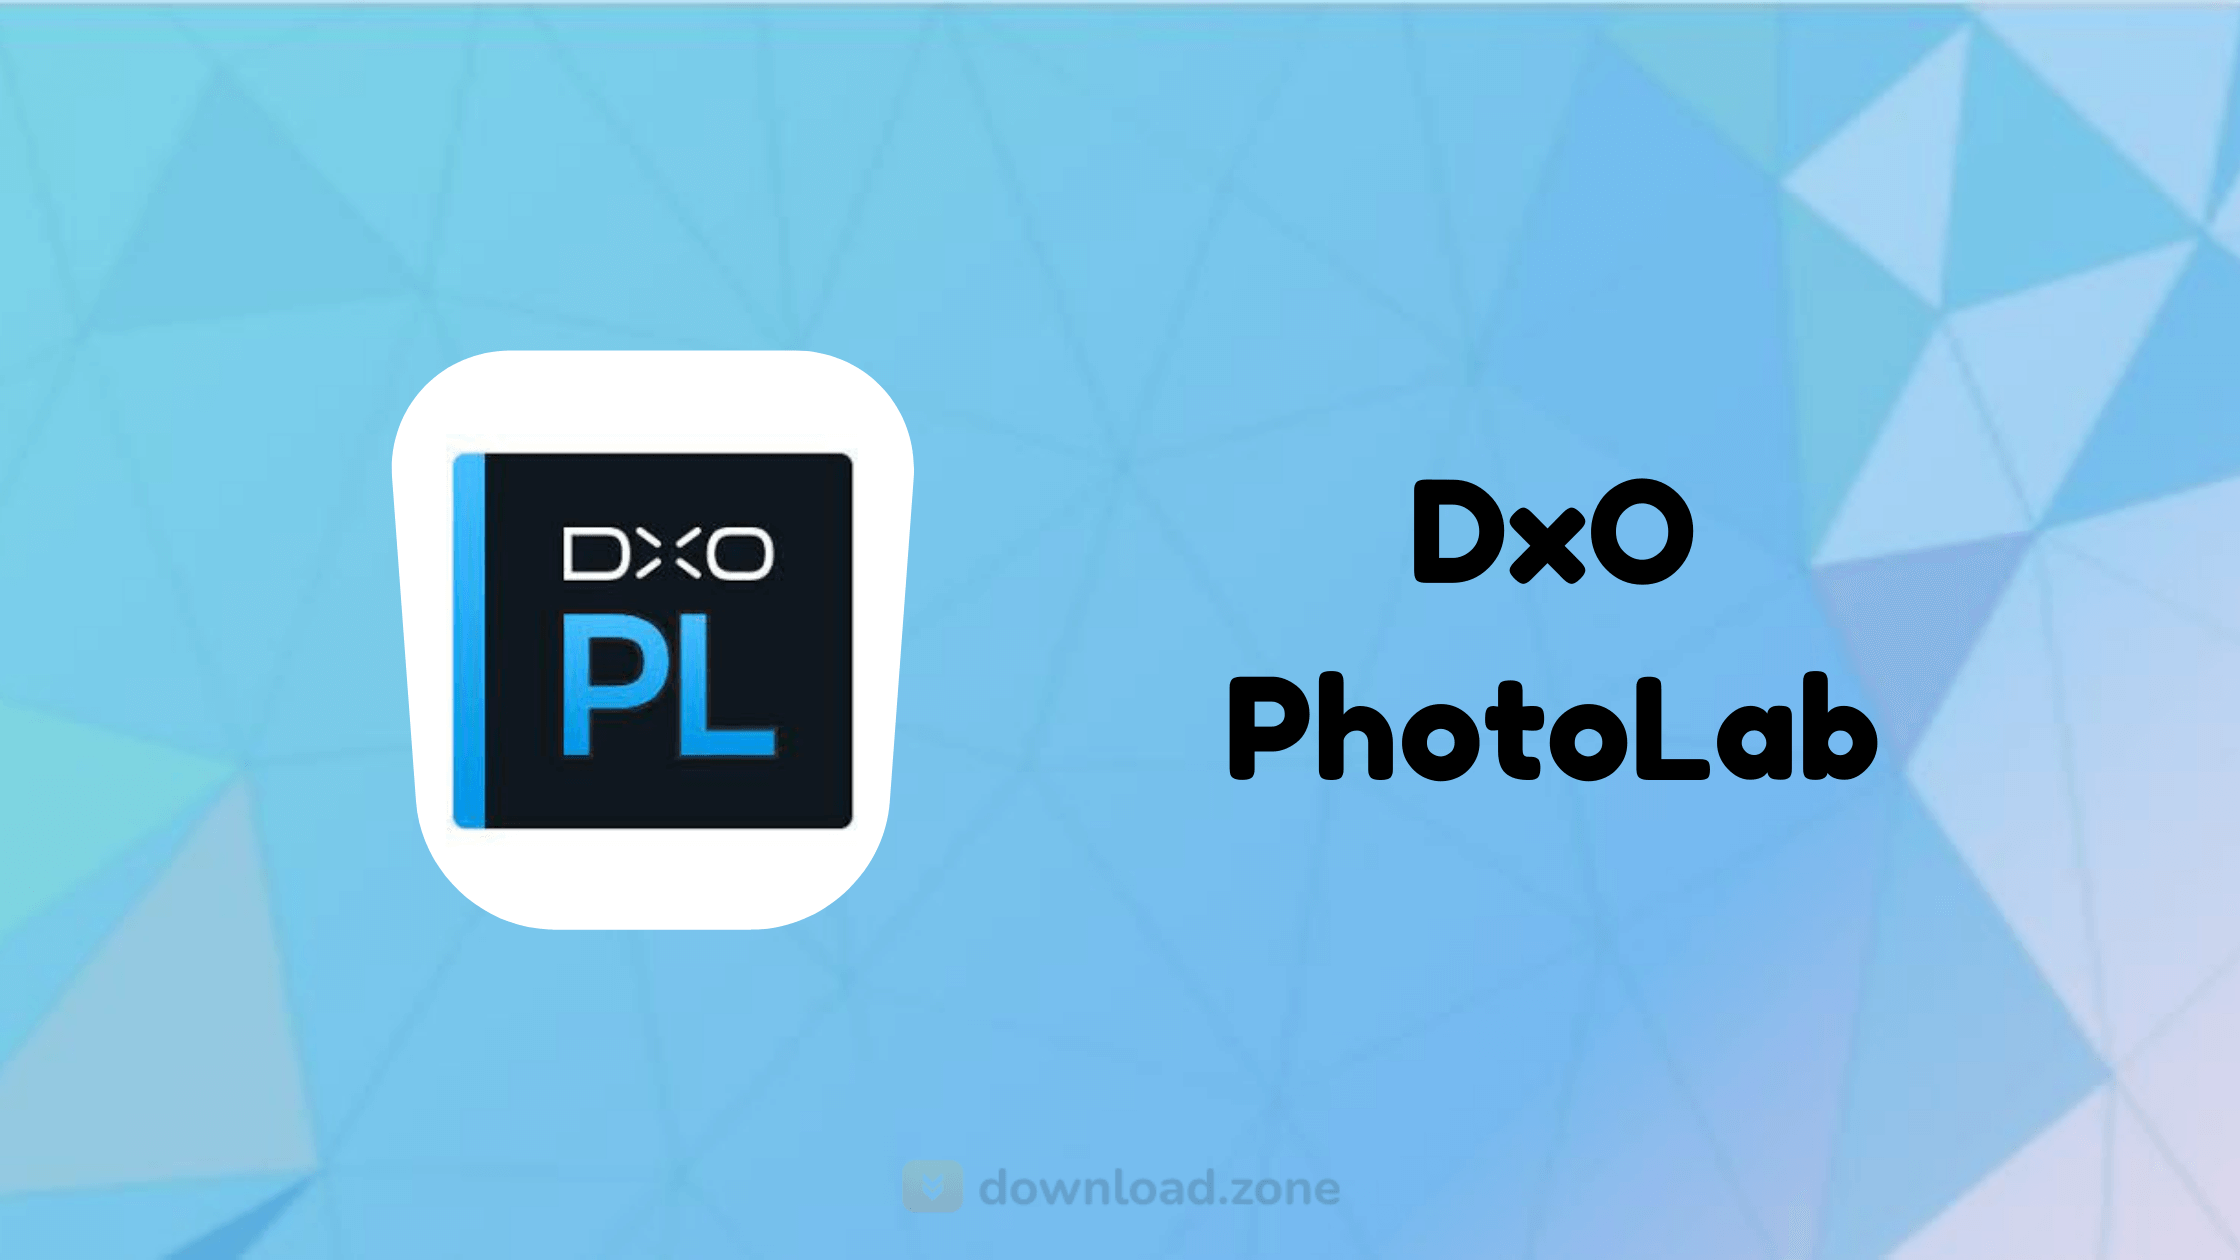 dxo photolab